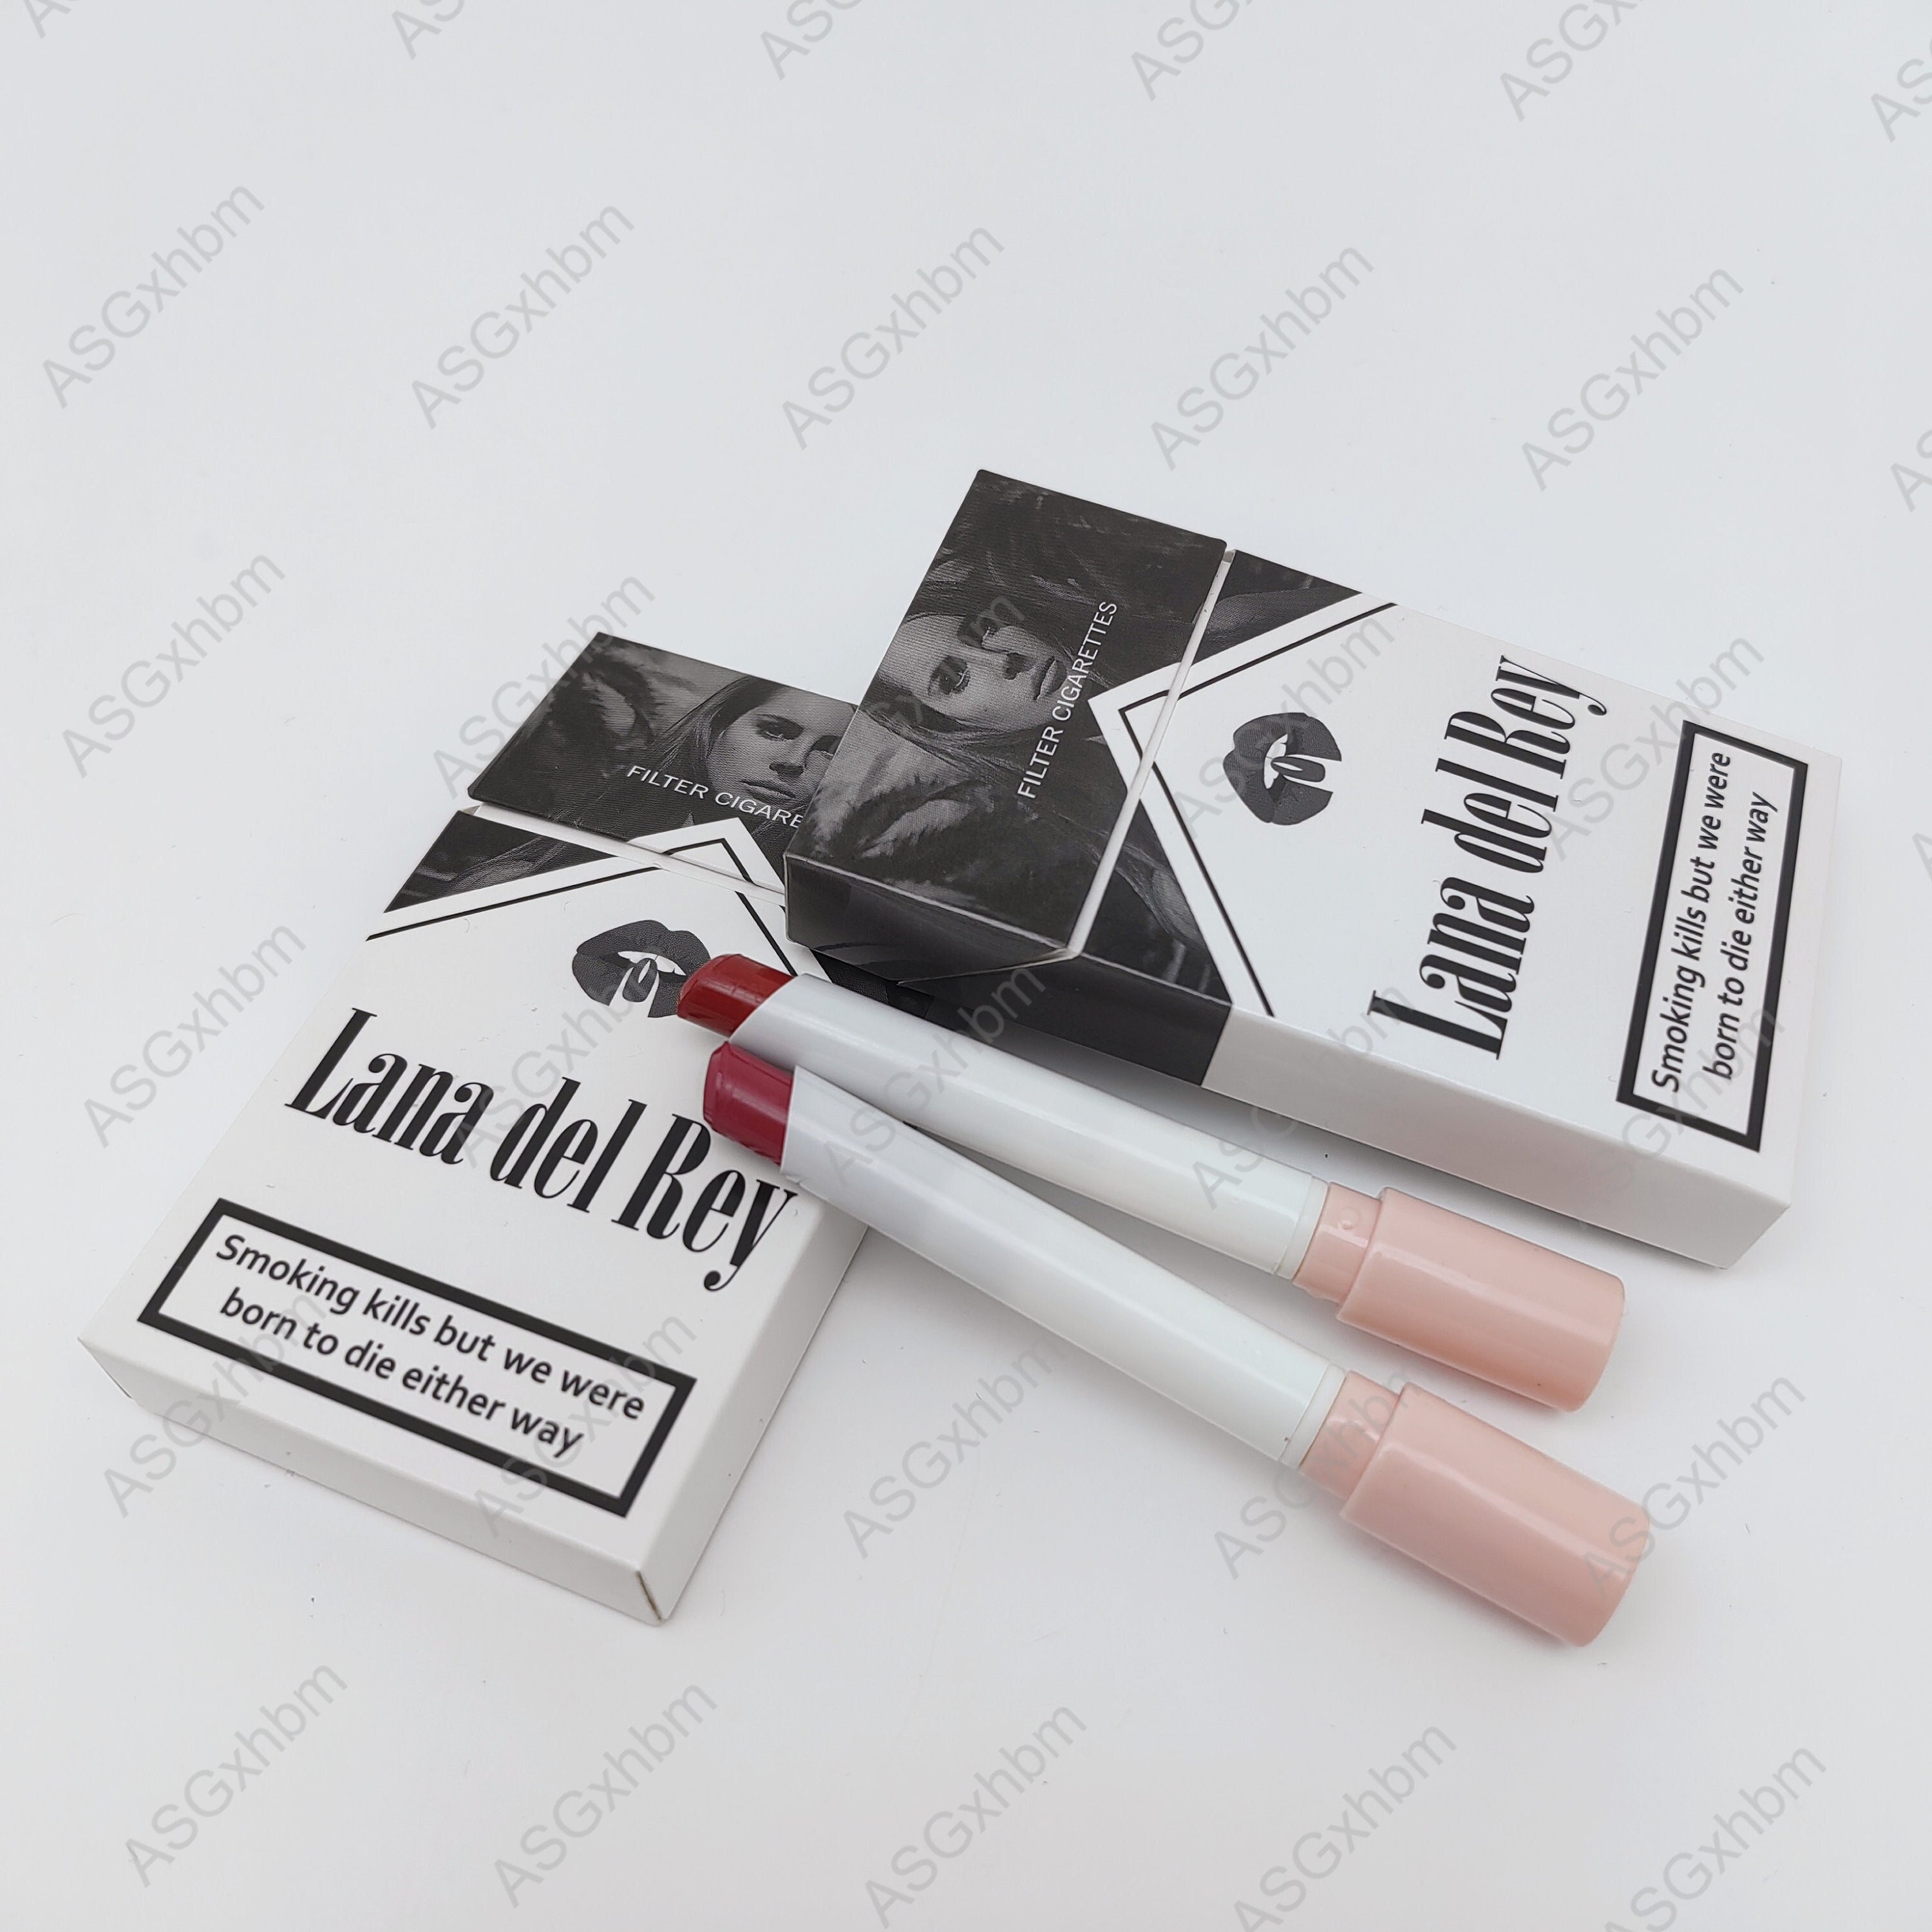 CHANEL Cigarette Case – Kilo Caviar